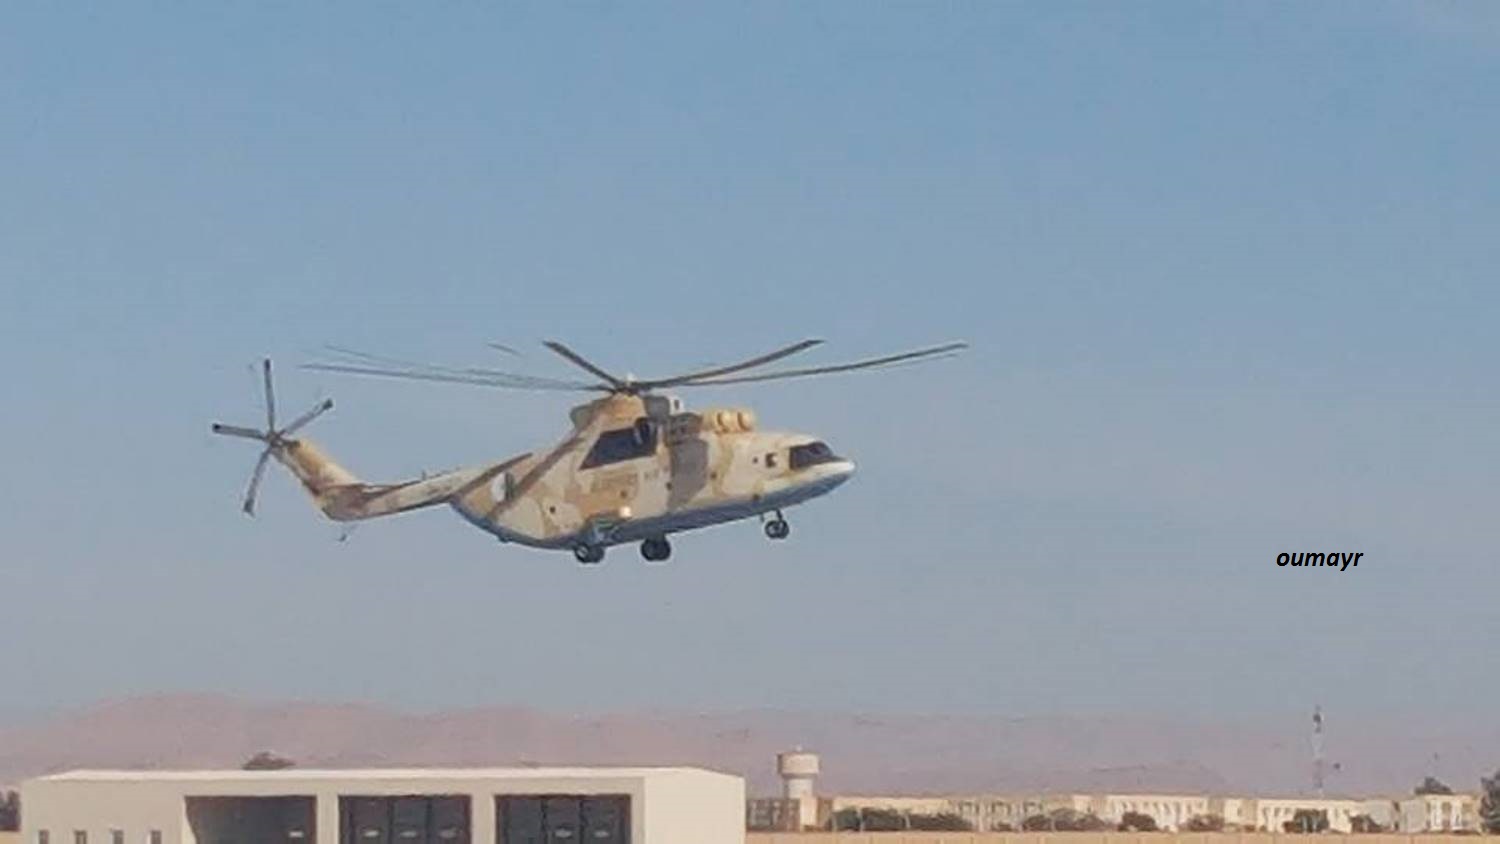 صور المروحيات الجزائرية  MI-26T2 - صفحة 18 32952188545_bac37241f2_o